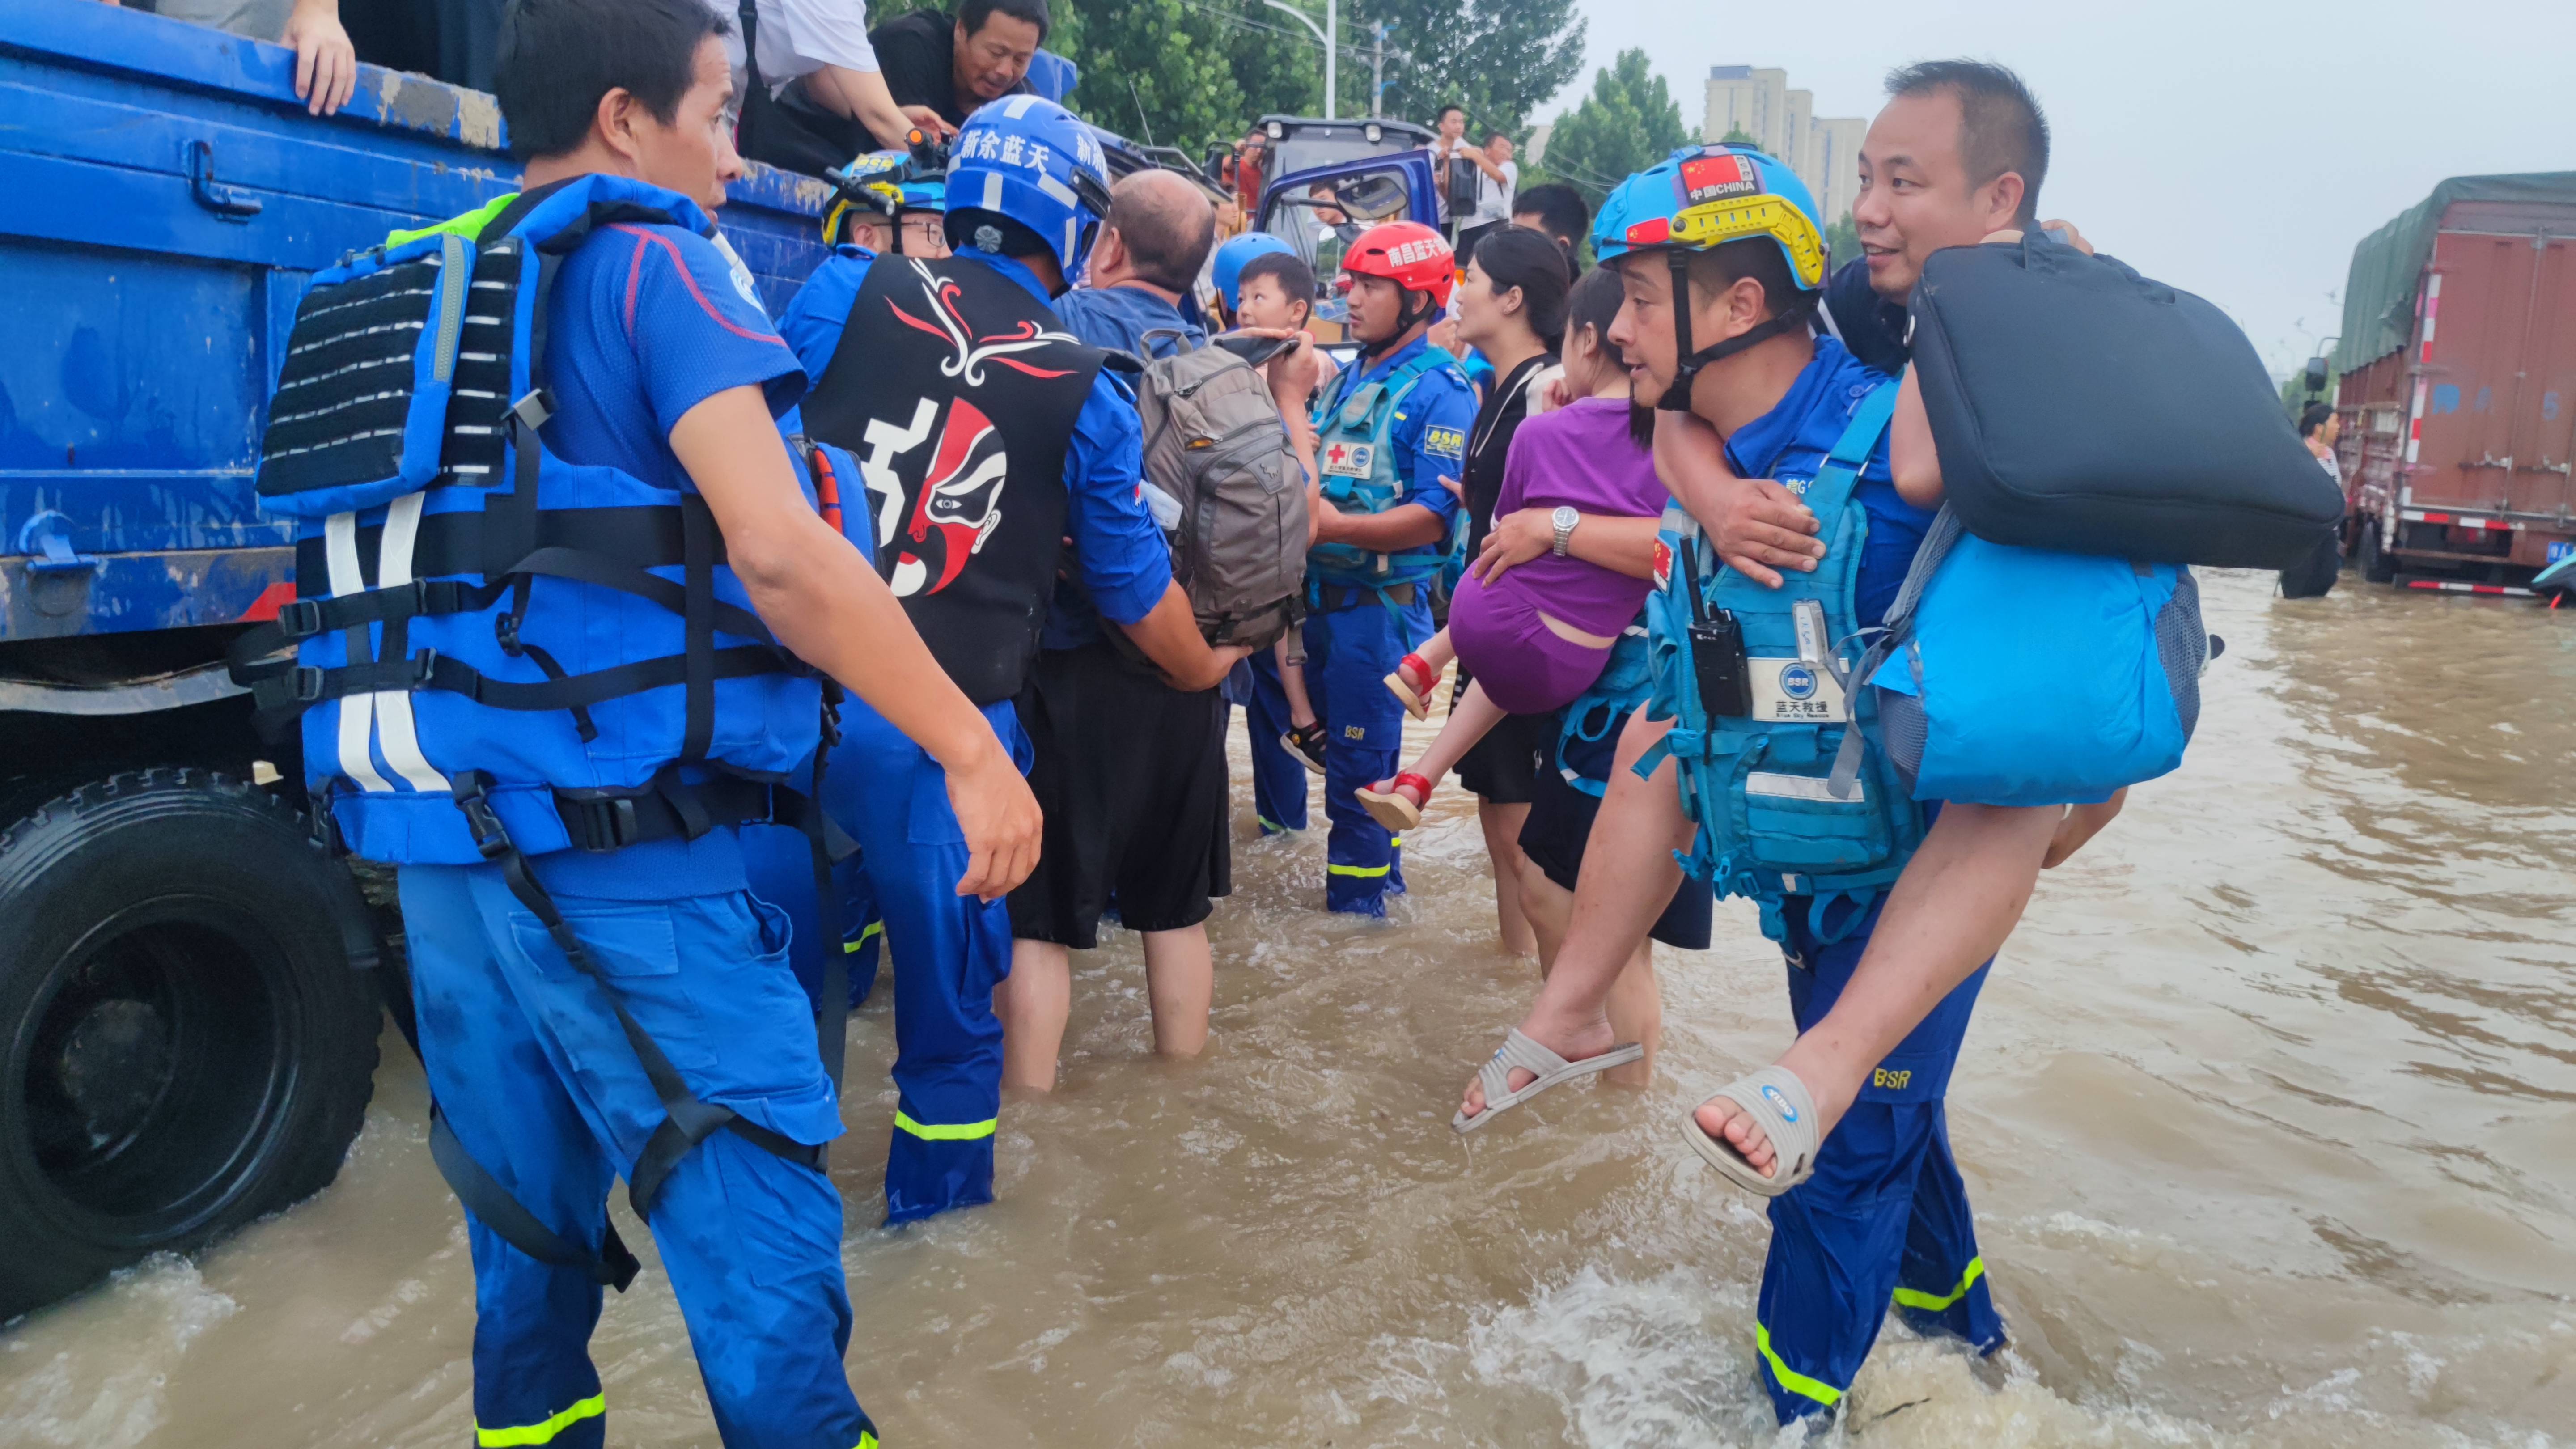 郑州救援现场图片